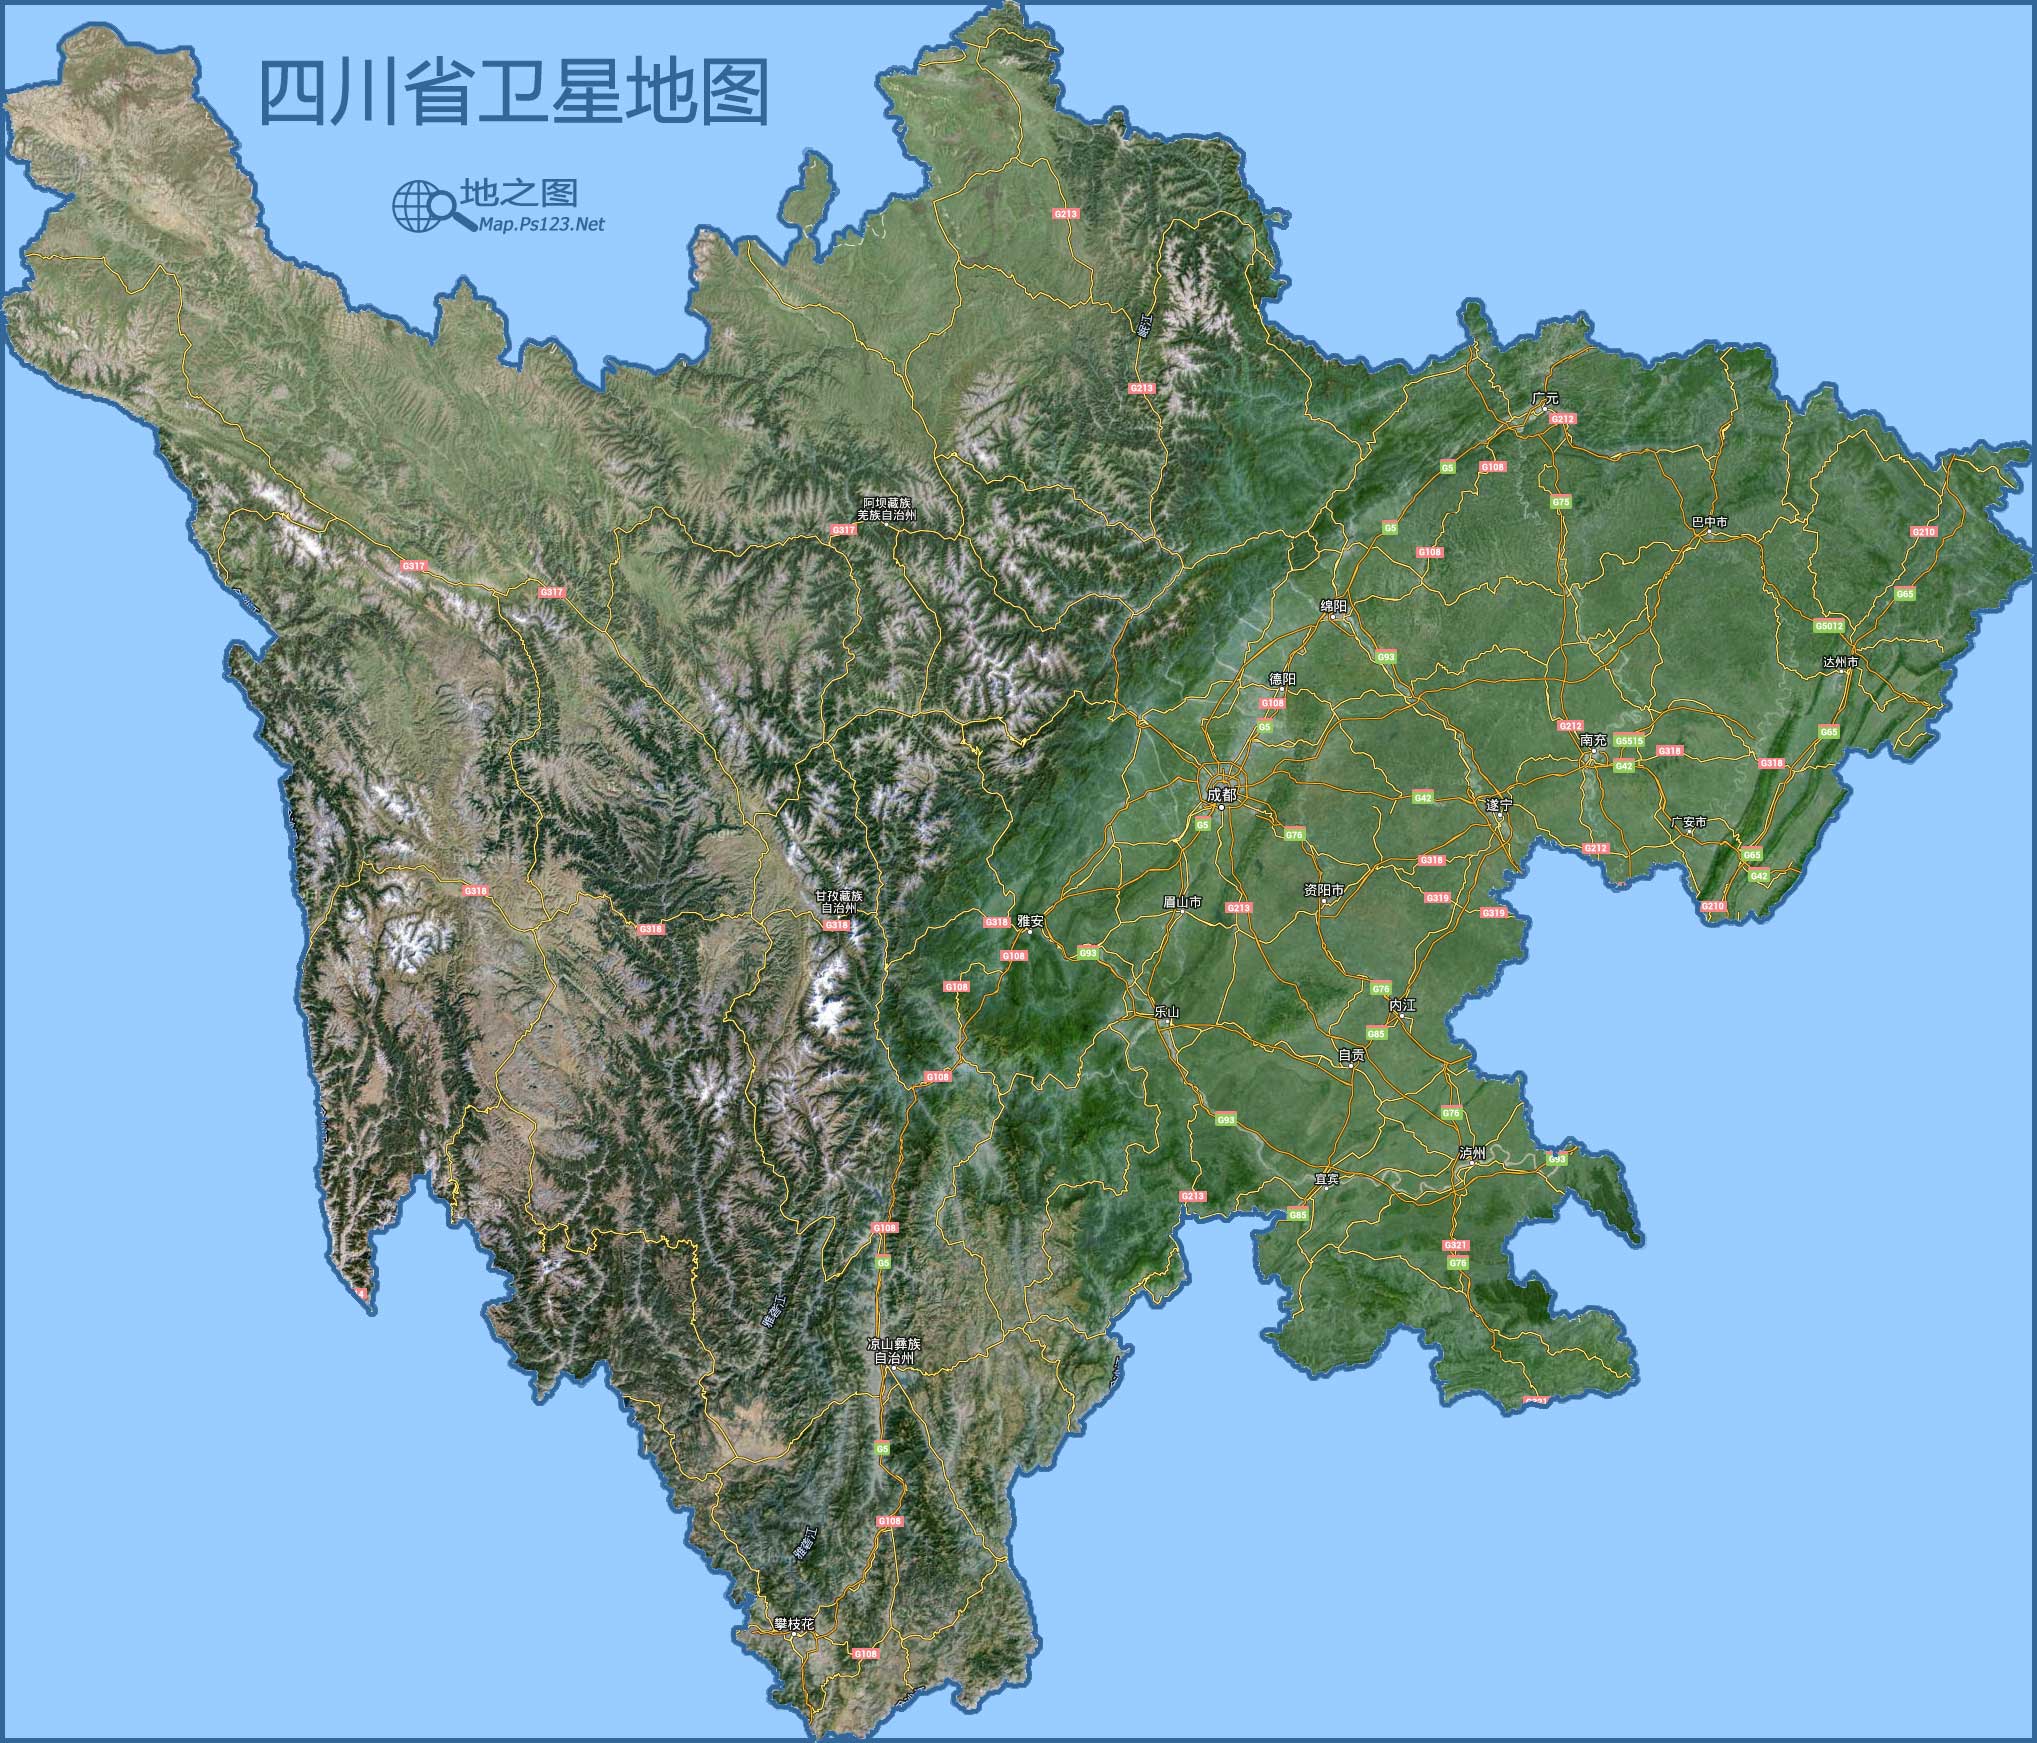 四川卫星地图(源自网络)